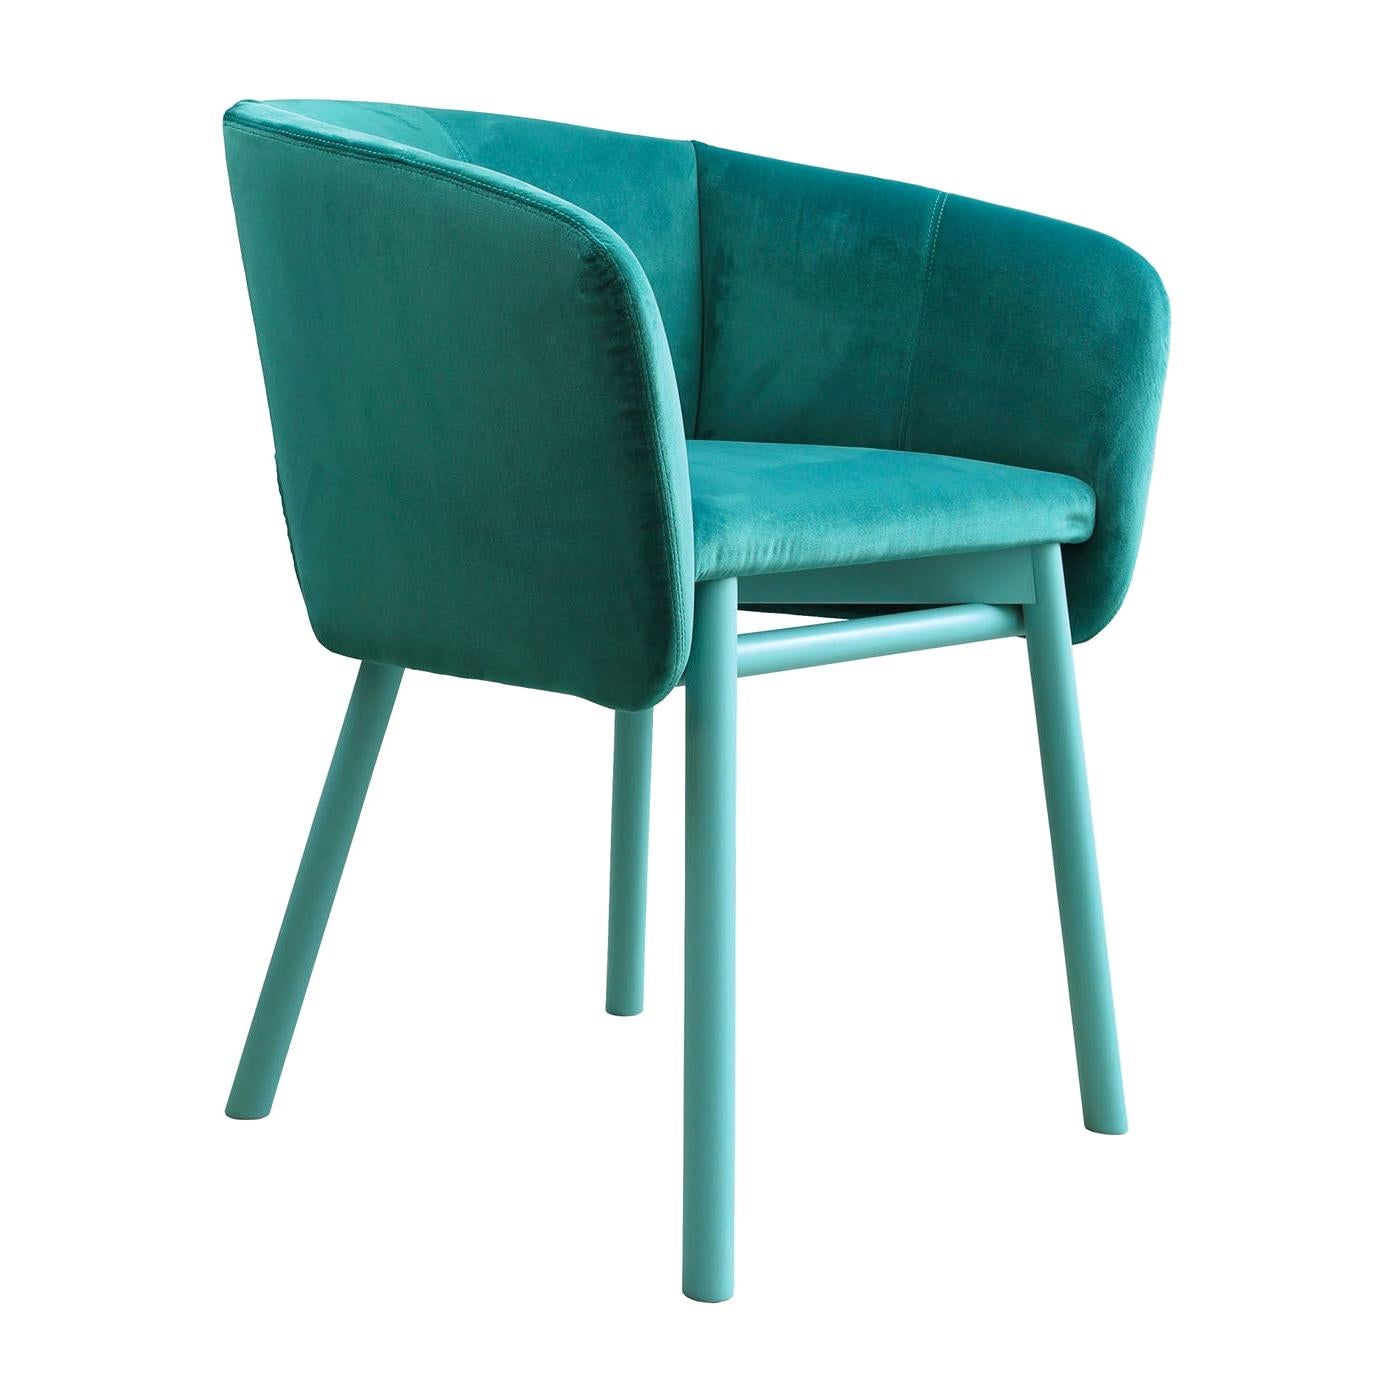 Balù Turquoise Chair by Emilio Nanni